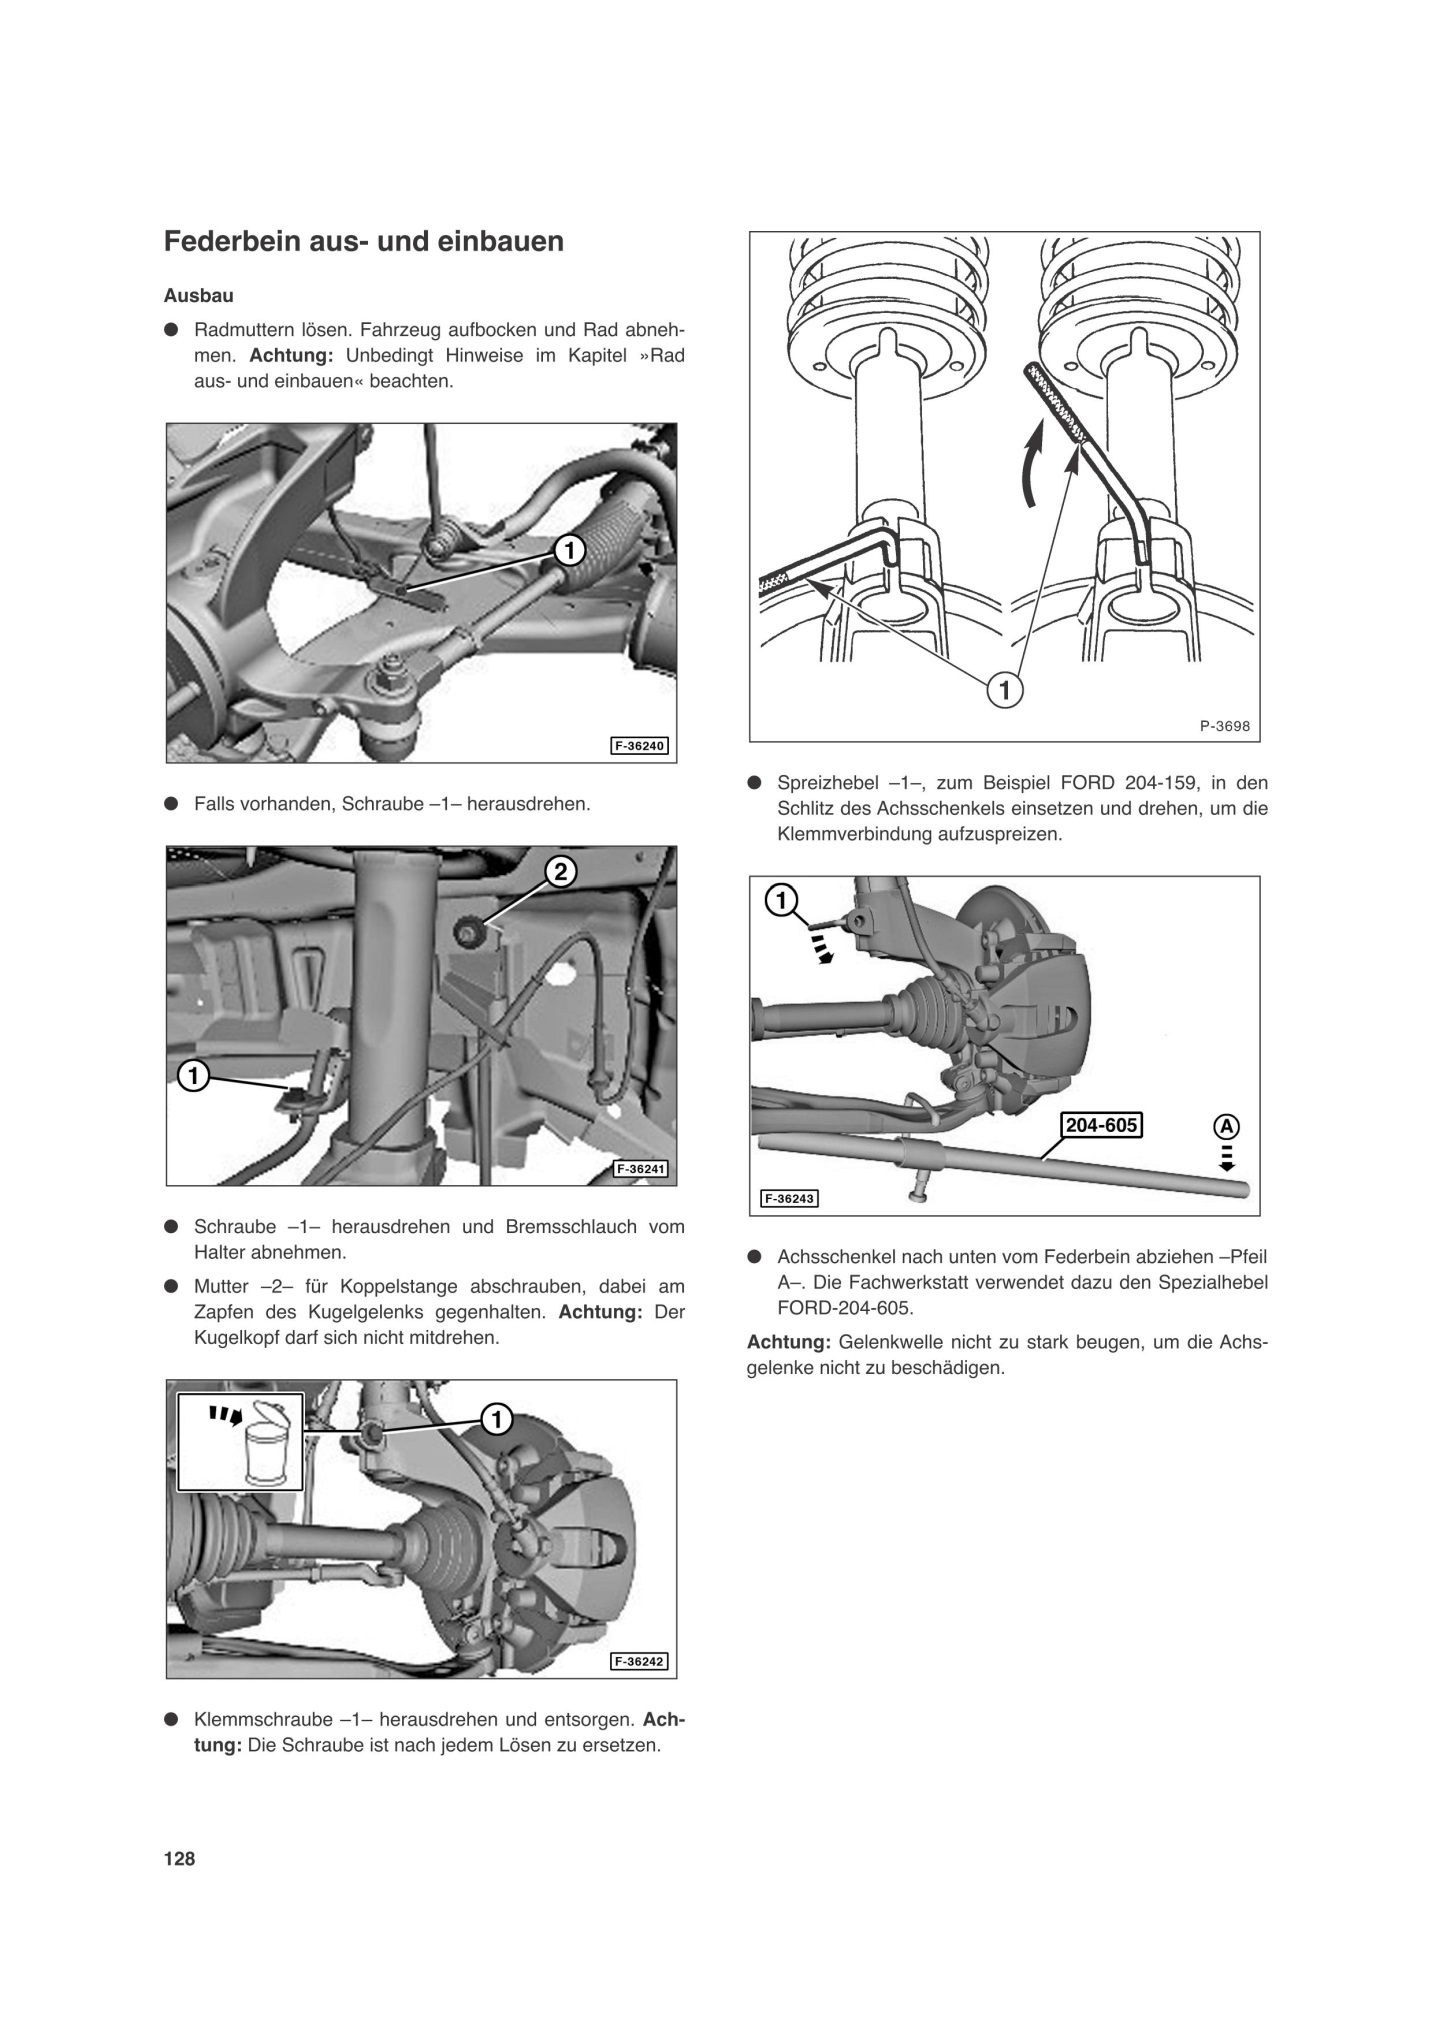 1 Reparaturanleitung So wirds gemacht/Etzold Reparatur-Handbuch FORD FOCUS 